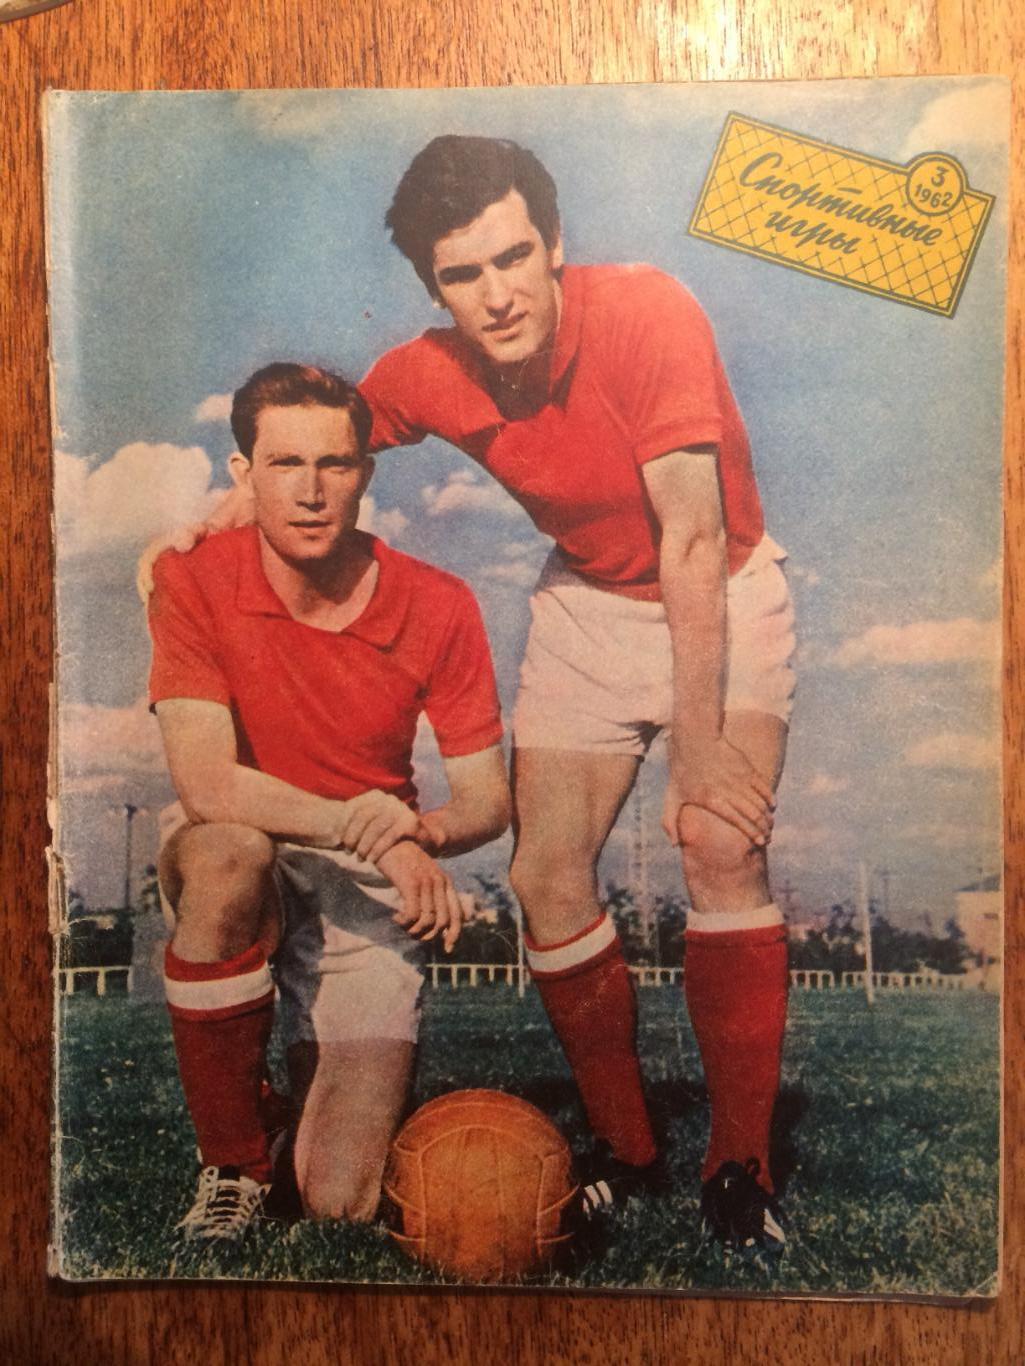 Журнал Спортивные игры №3 1962